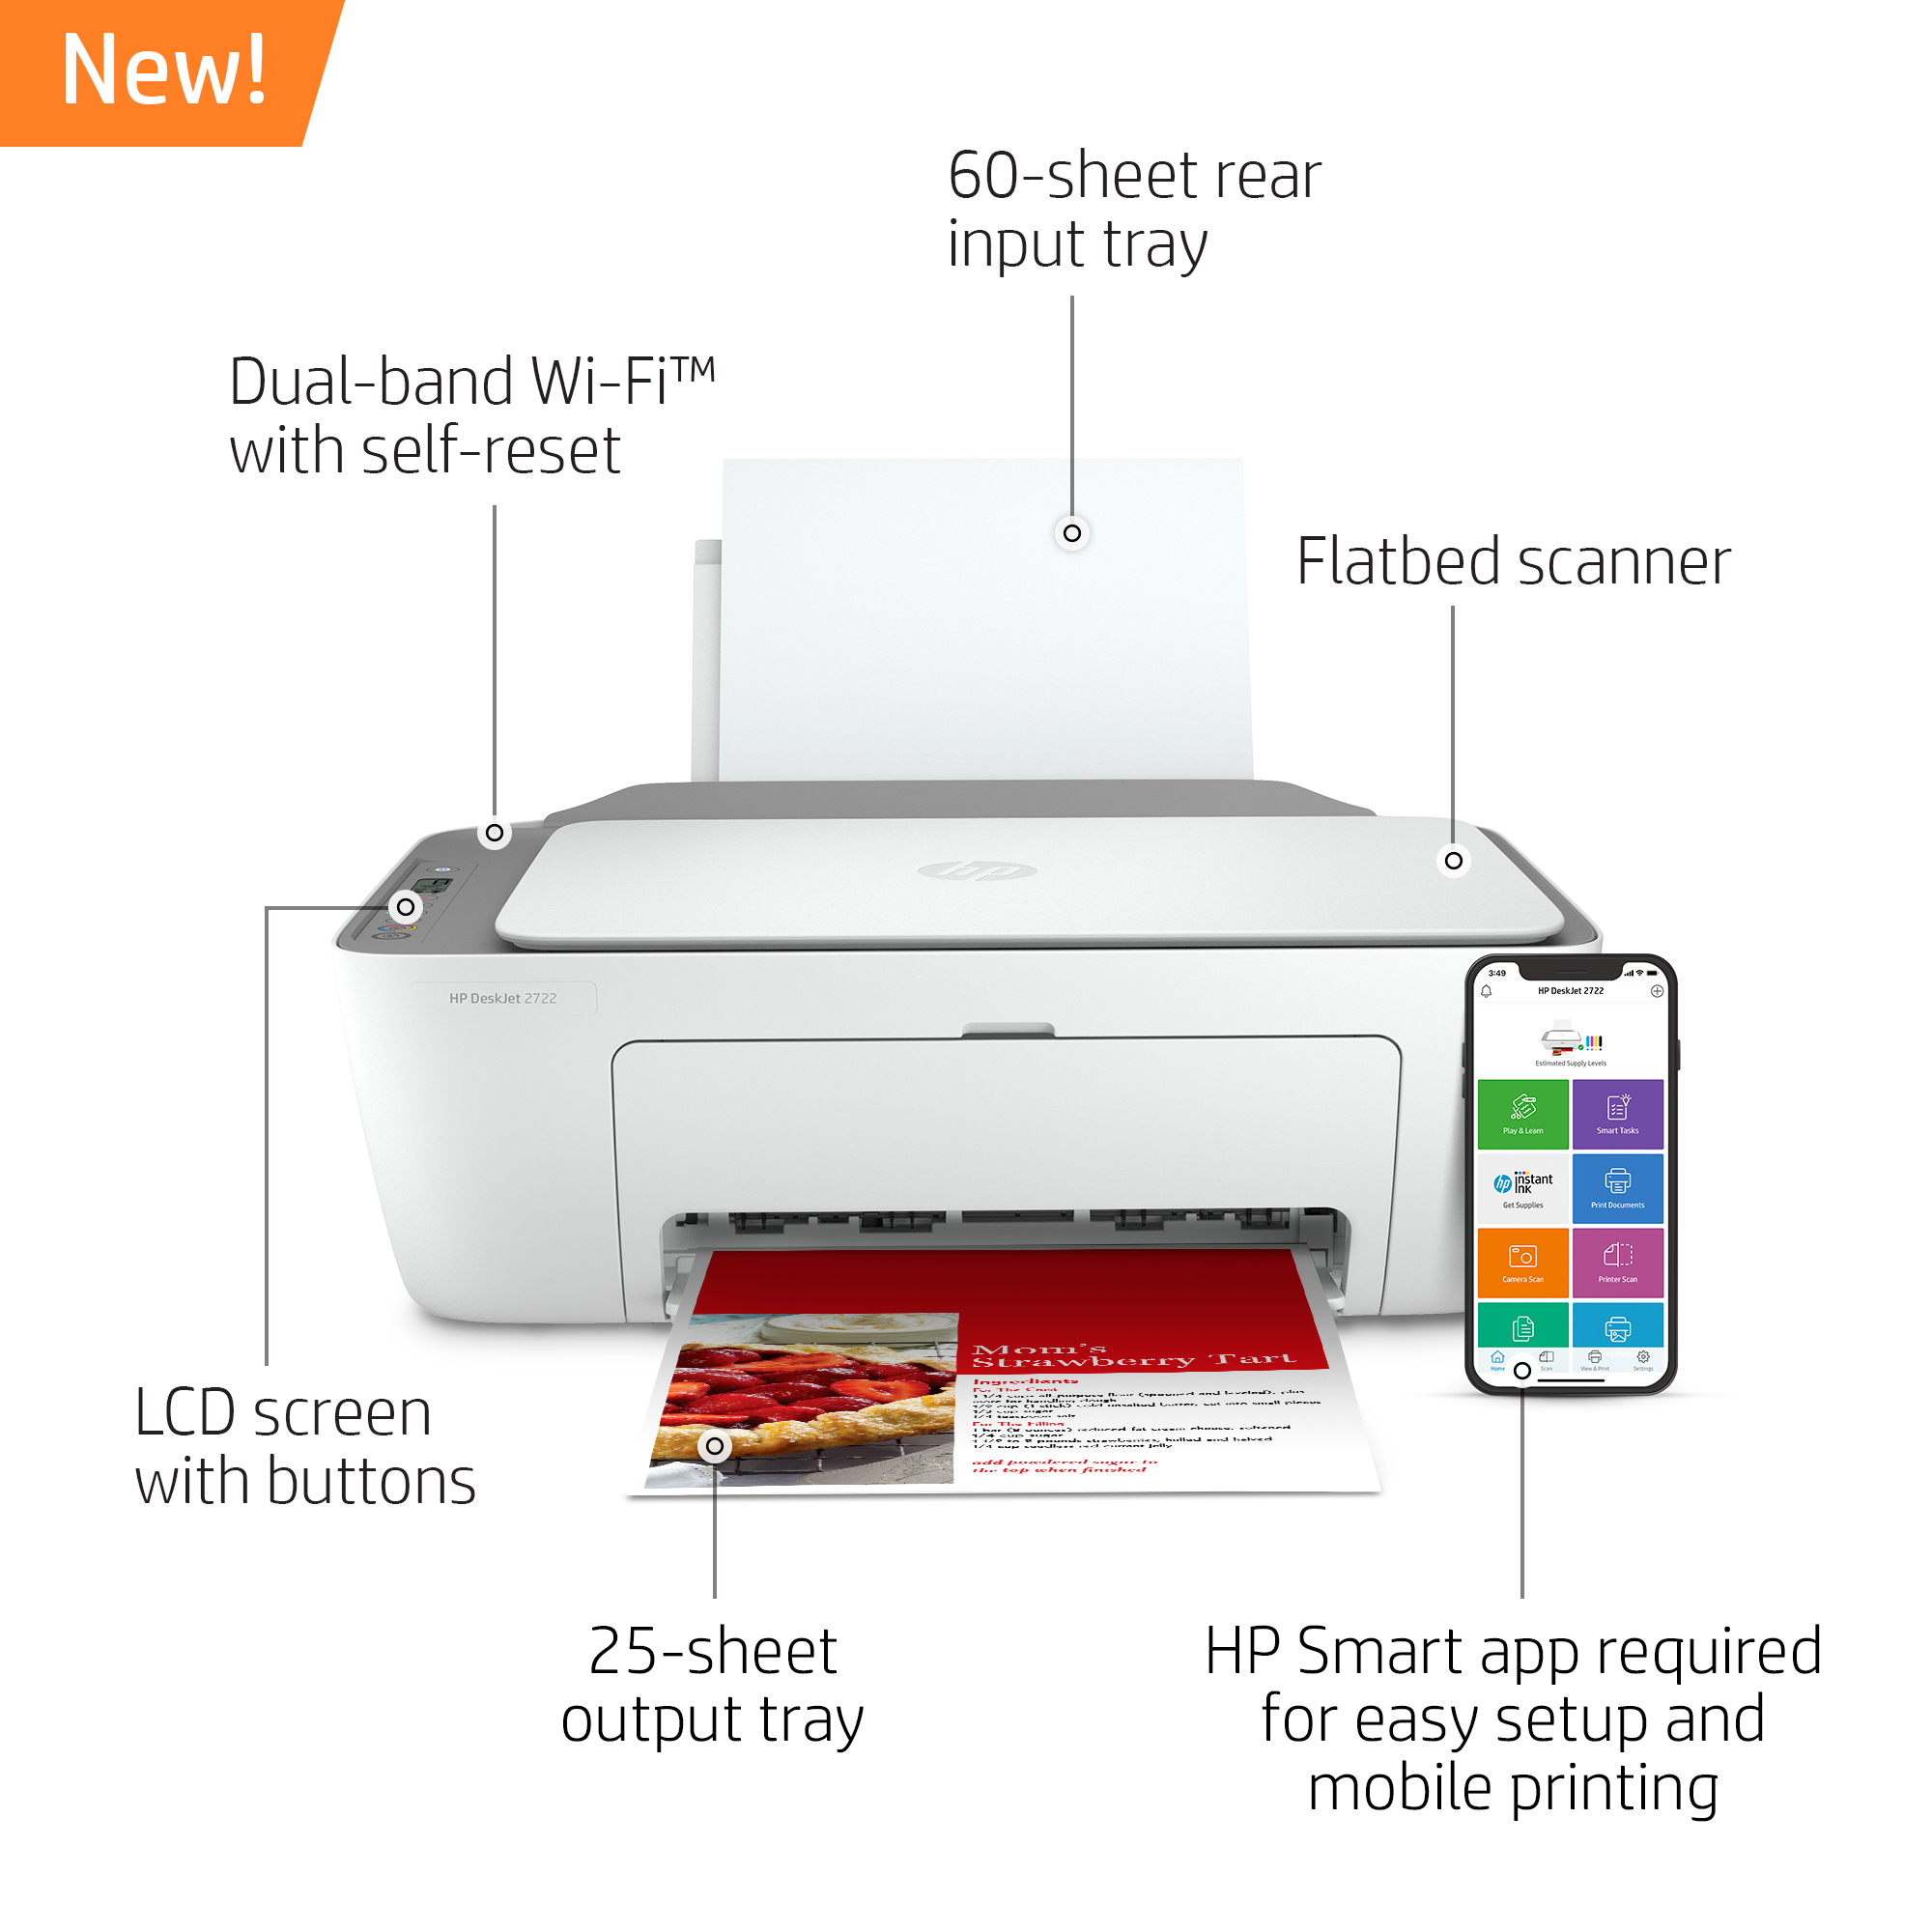 HP DeskJet 2722 All-in-One Printer, White - image 3 of 10